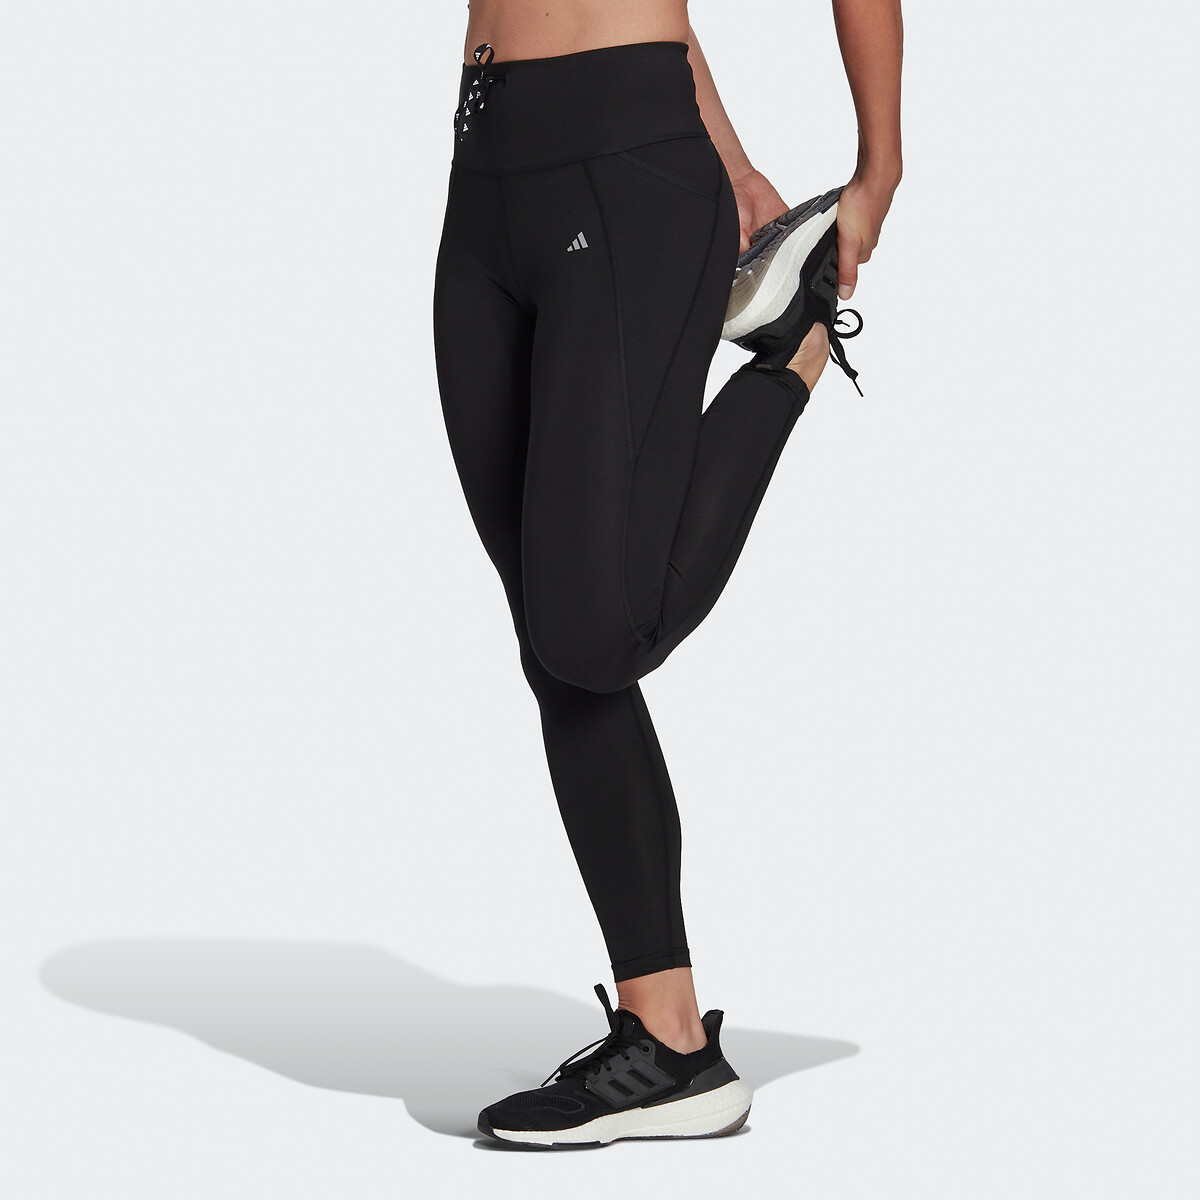 Calça Legging Feminina adidas Yoga Seas em Promoção